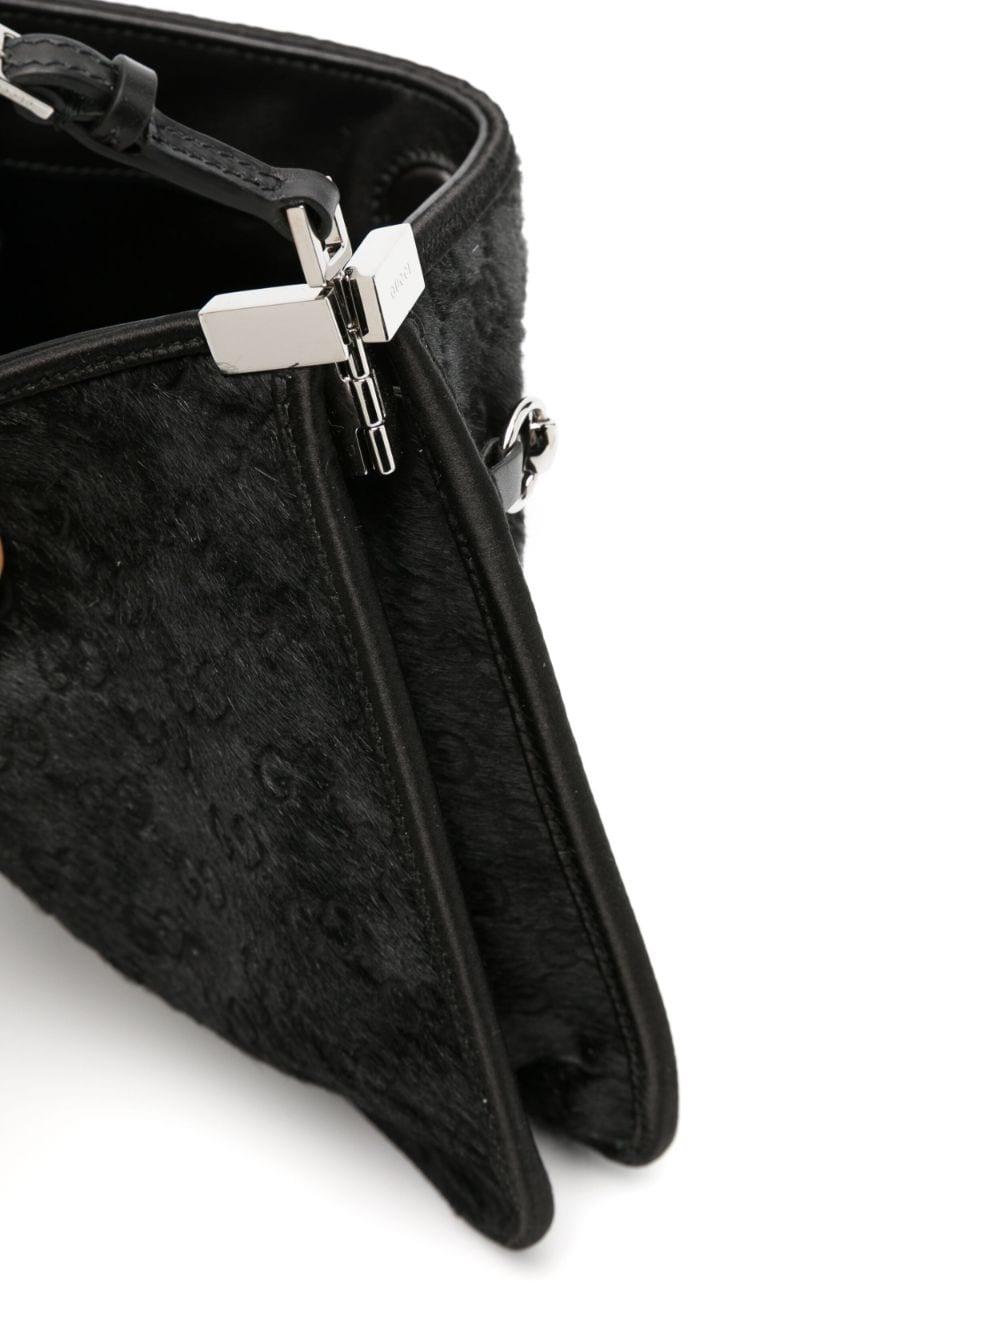 Gucci Horsebit Slim small shoulder bag in black calf hair